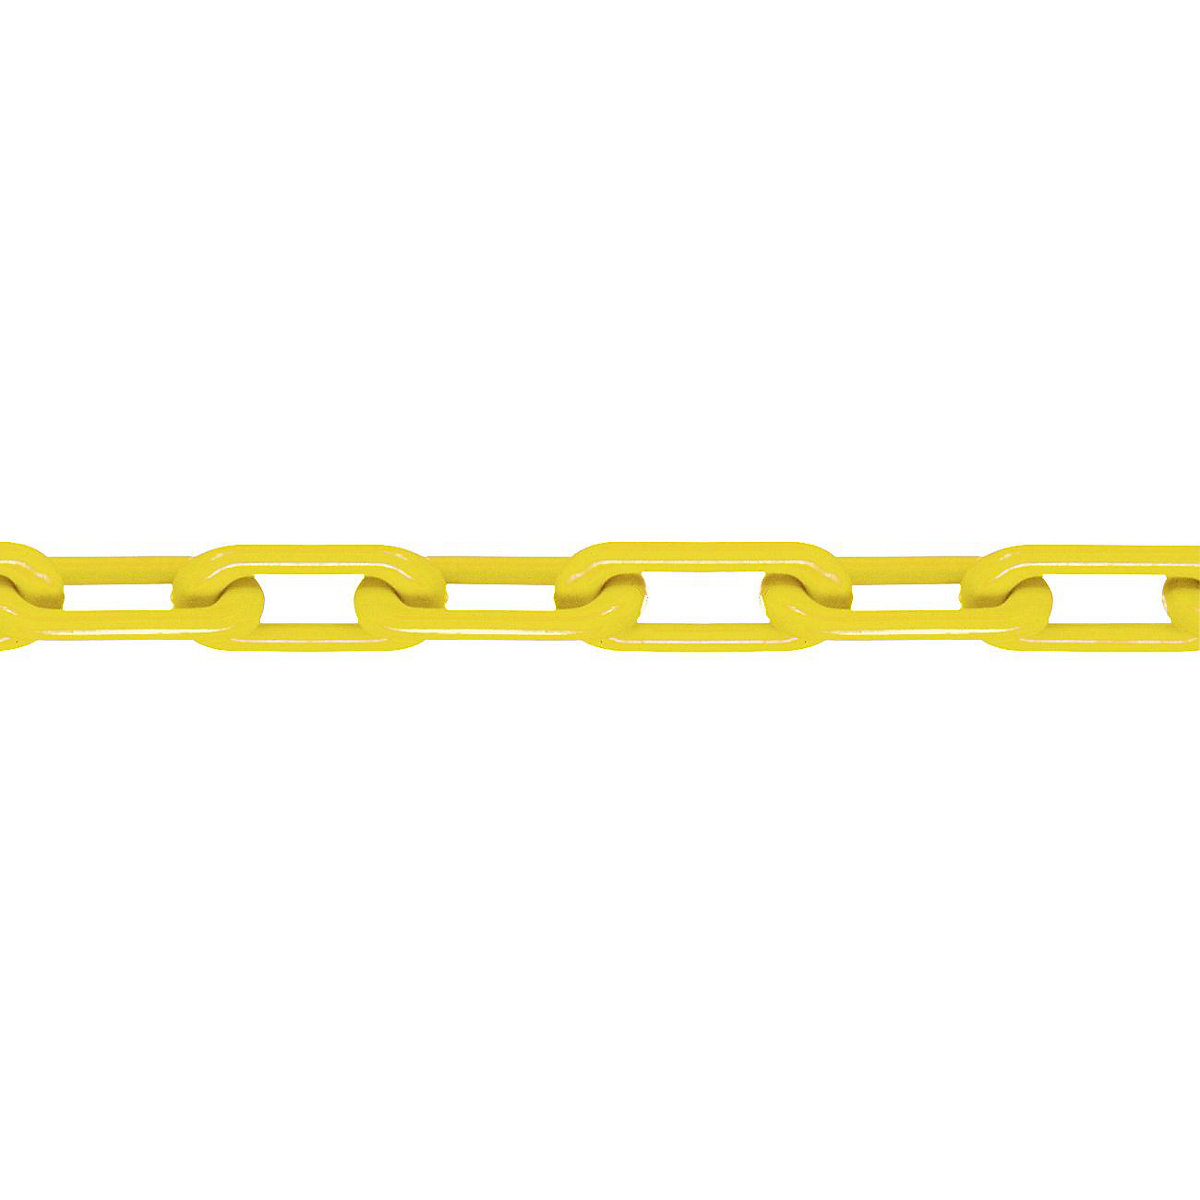 Łańcuch z nylonu, jakość MNK 8, dł. wiązki 25 m, żółty-3